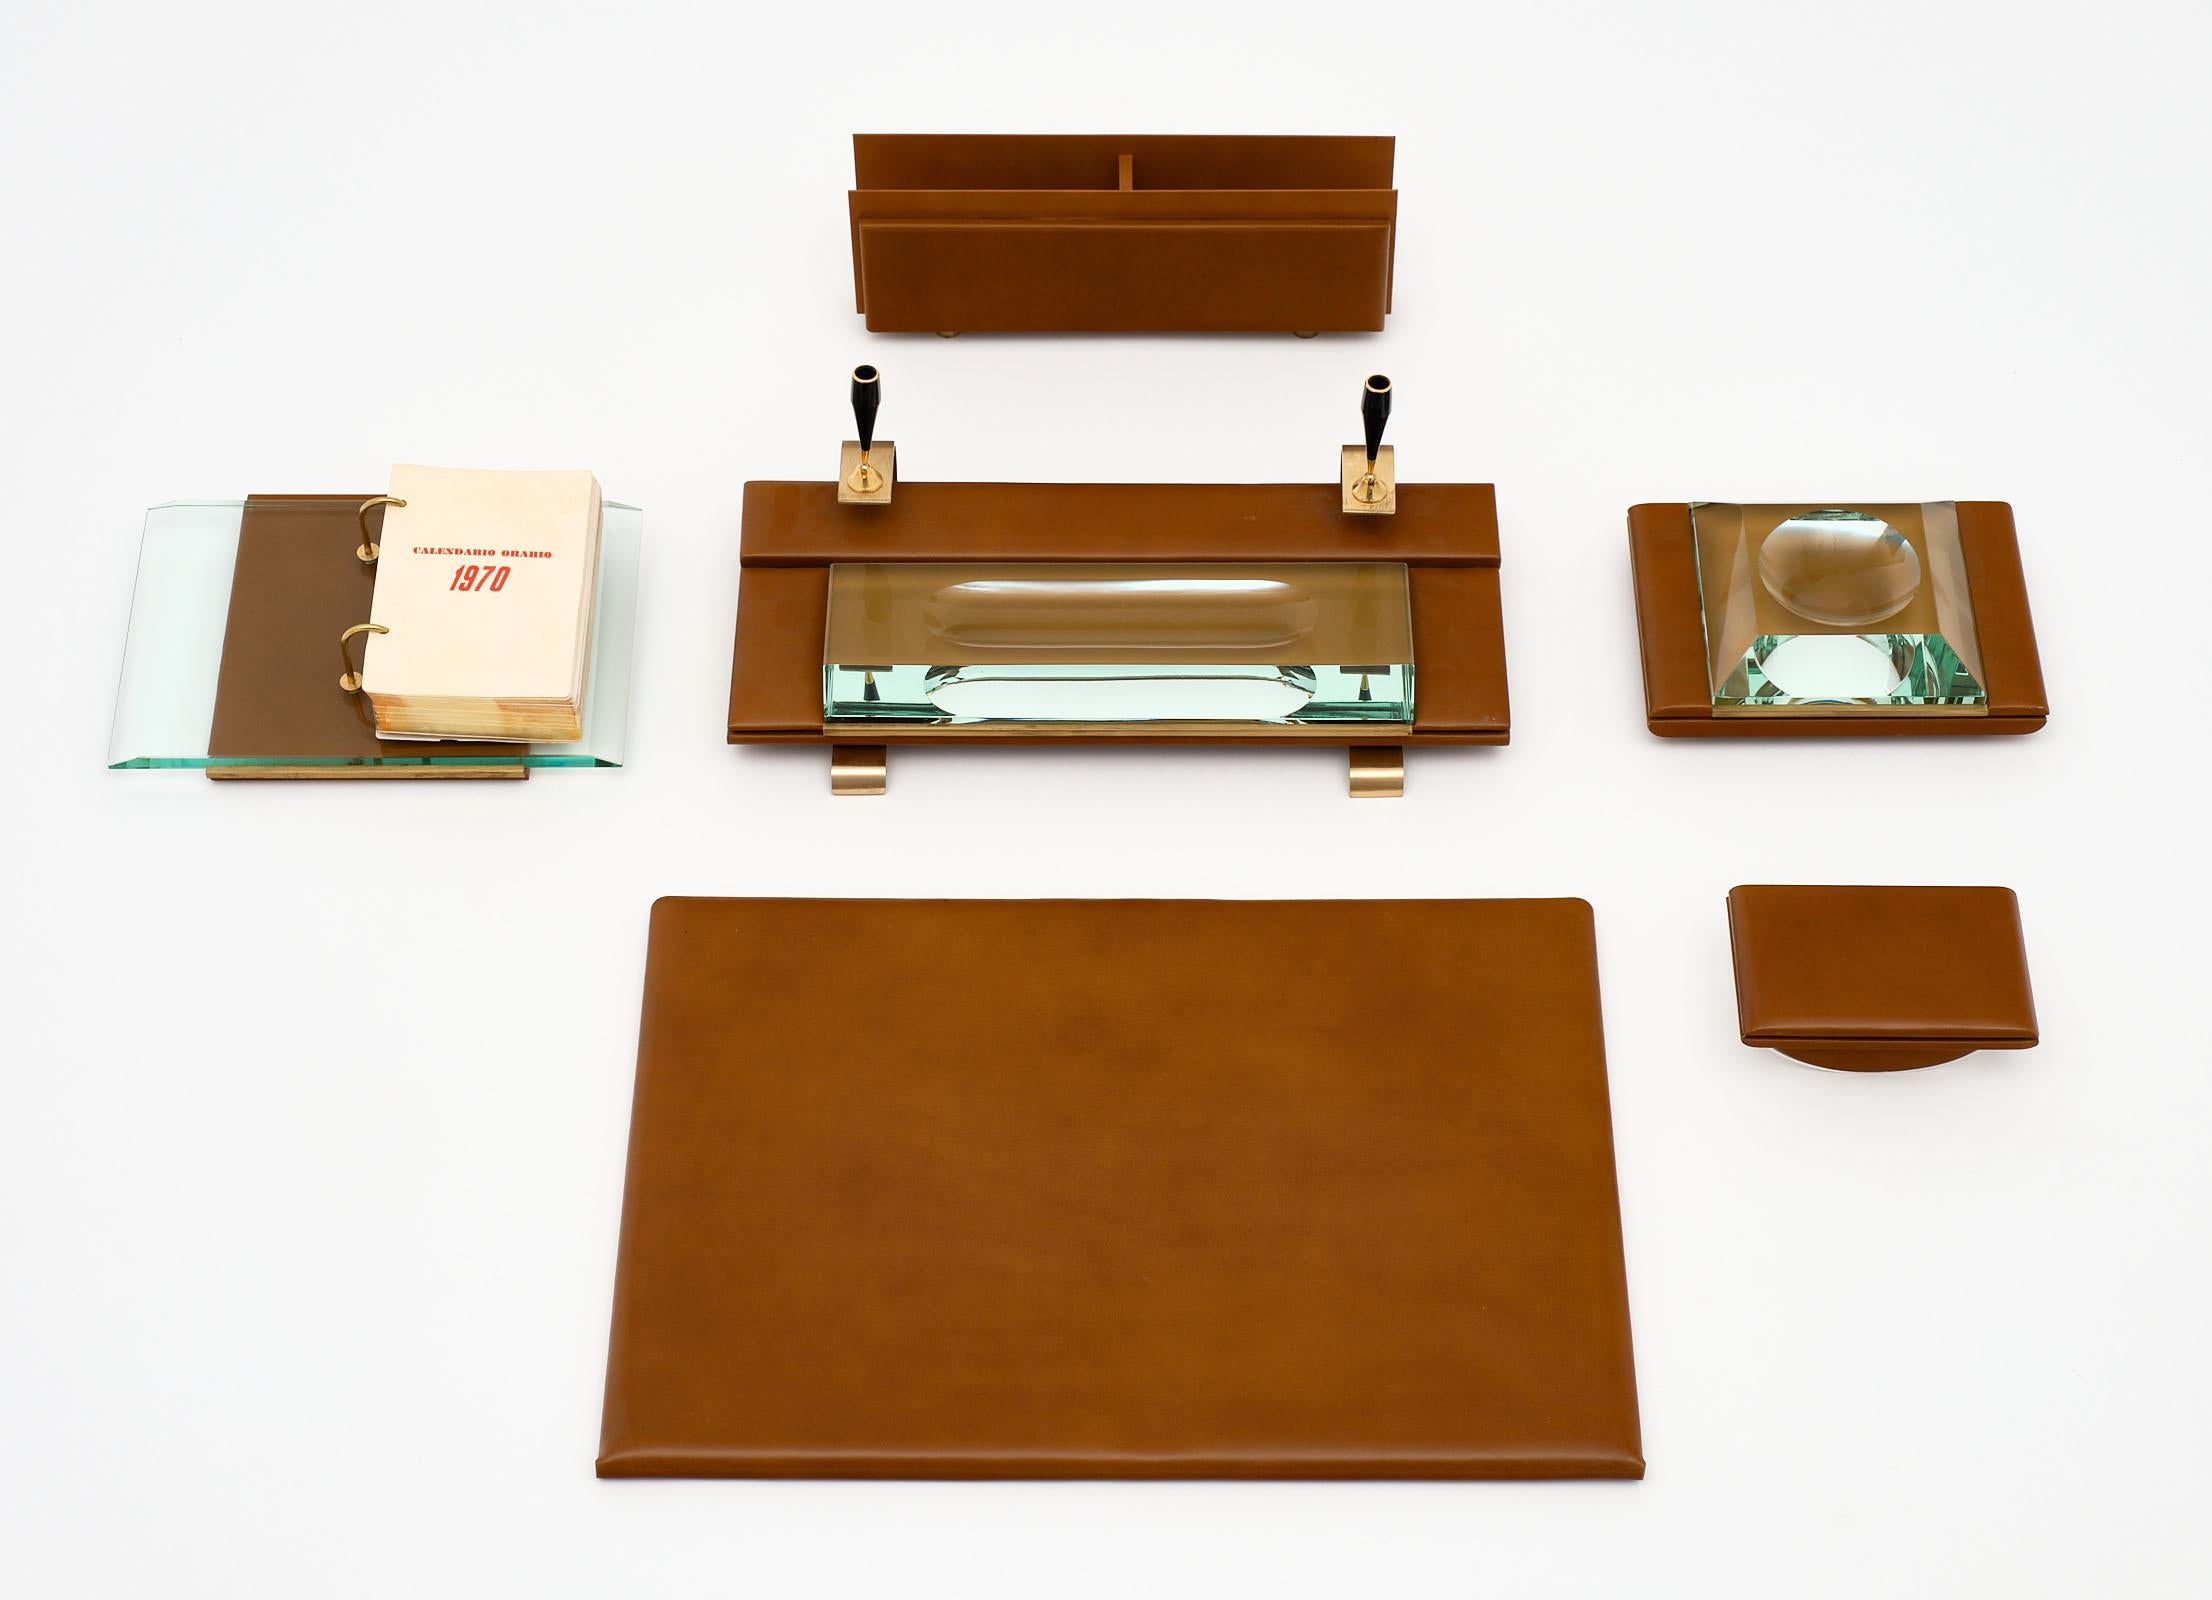 Ensemble de bureau en cuir italien des années 1970 composé de quatre pièces - comprenant une surface d'écriture en cuir, un porte-lettres, un calendrier de bureau des années 1970 et un sous-main. Les dimensions indiquées sont celles de la surface